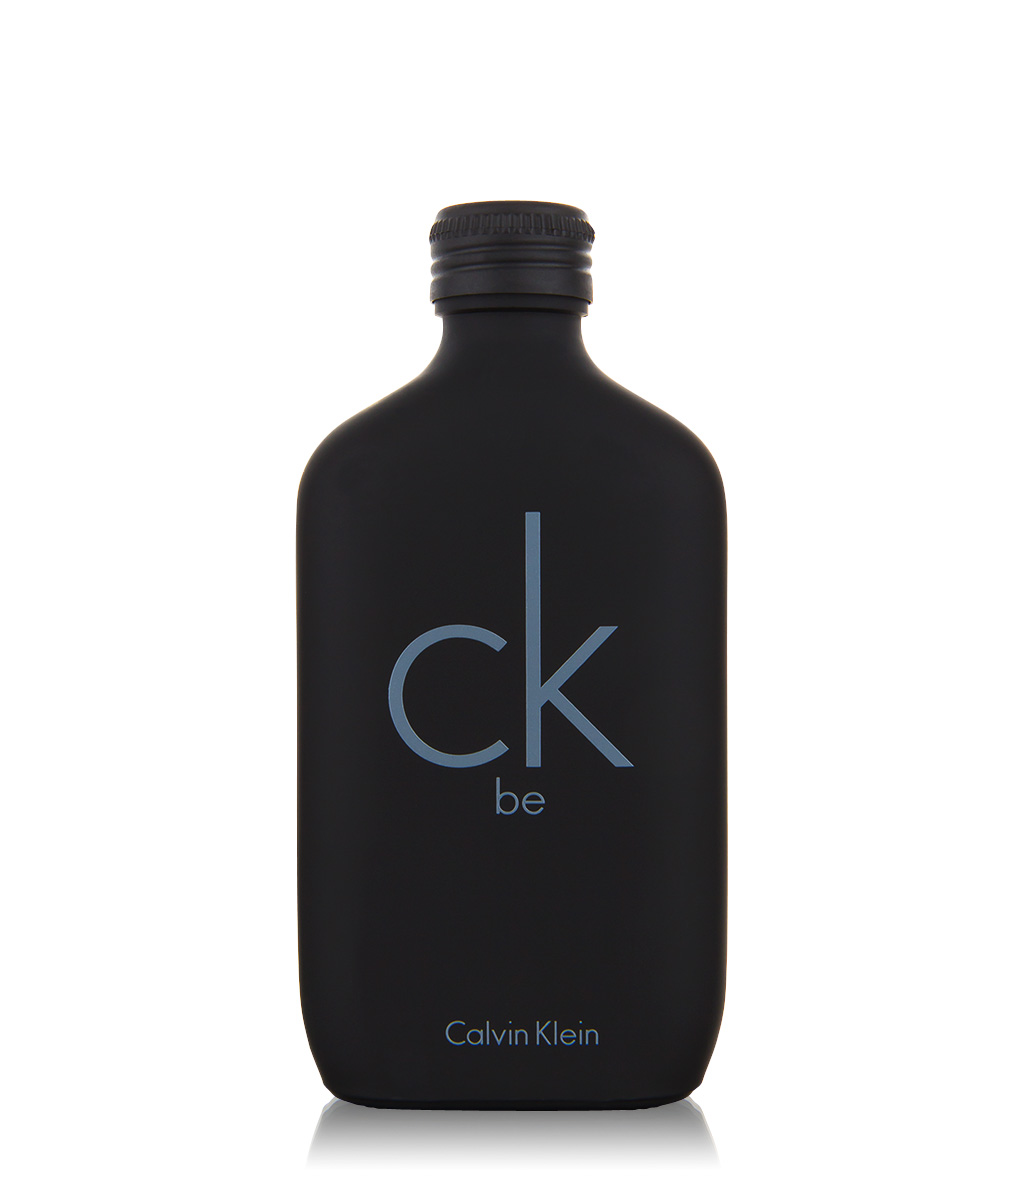 Calvin Klein ck Be